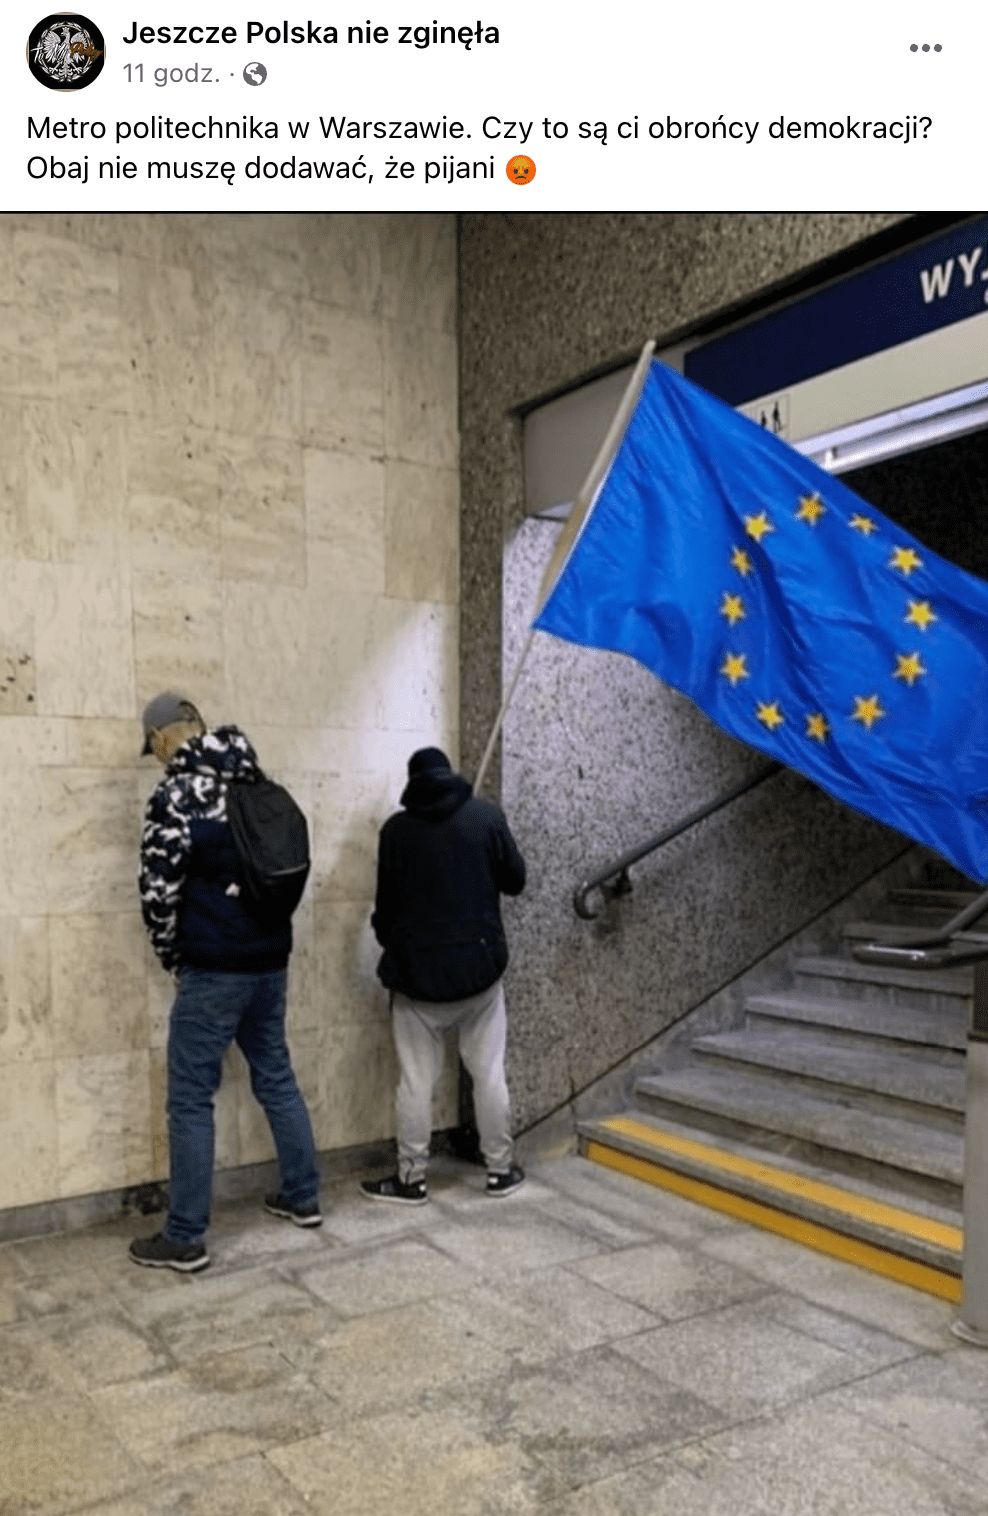 Zrzut ekranu posta na Facebooku. Widoczni są dwa mężczyźni oddający mocz na stacji metra. Jeden z nich trzyma w ręku flagę Unii Europejskiej.